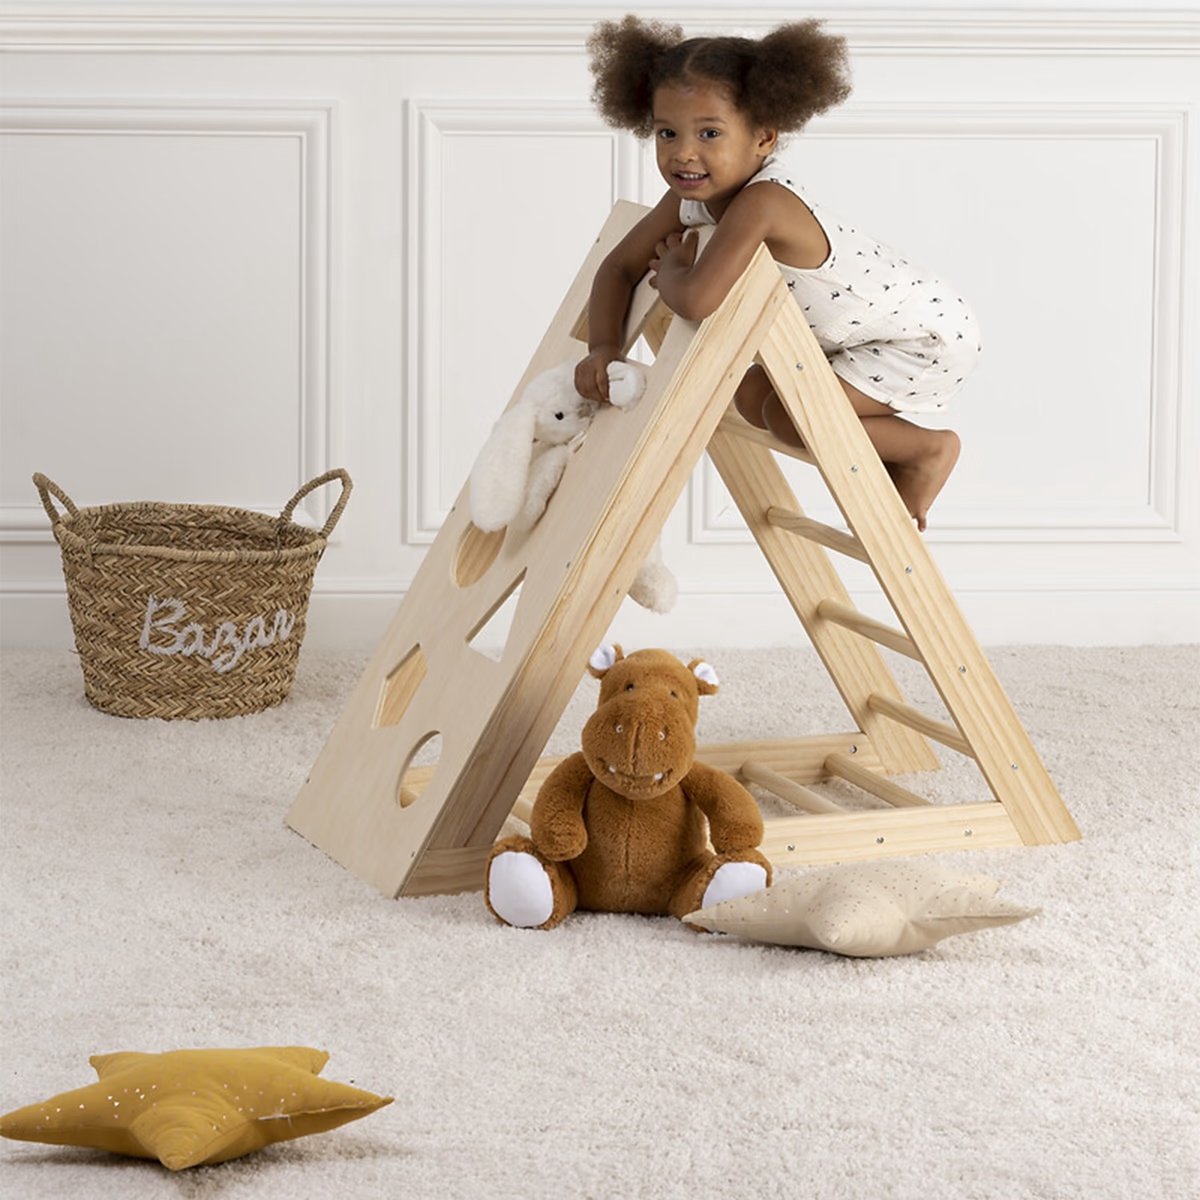 PLAYWALL Triangle jeu d'escalade Montessori cadre d'escalade bois